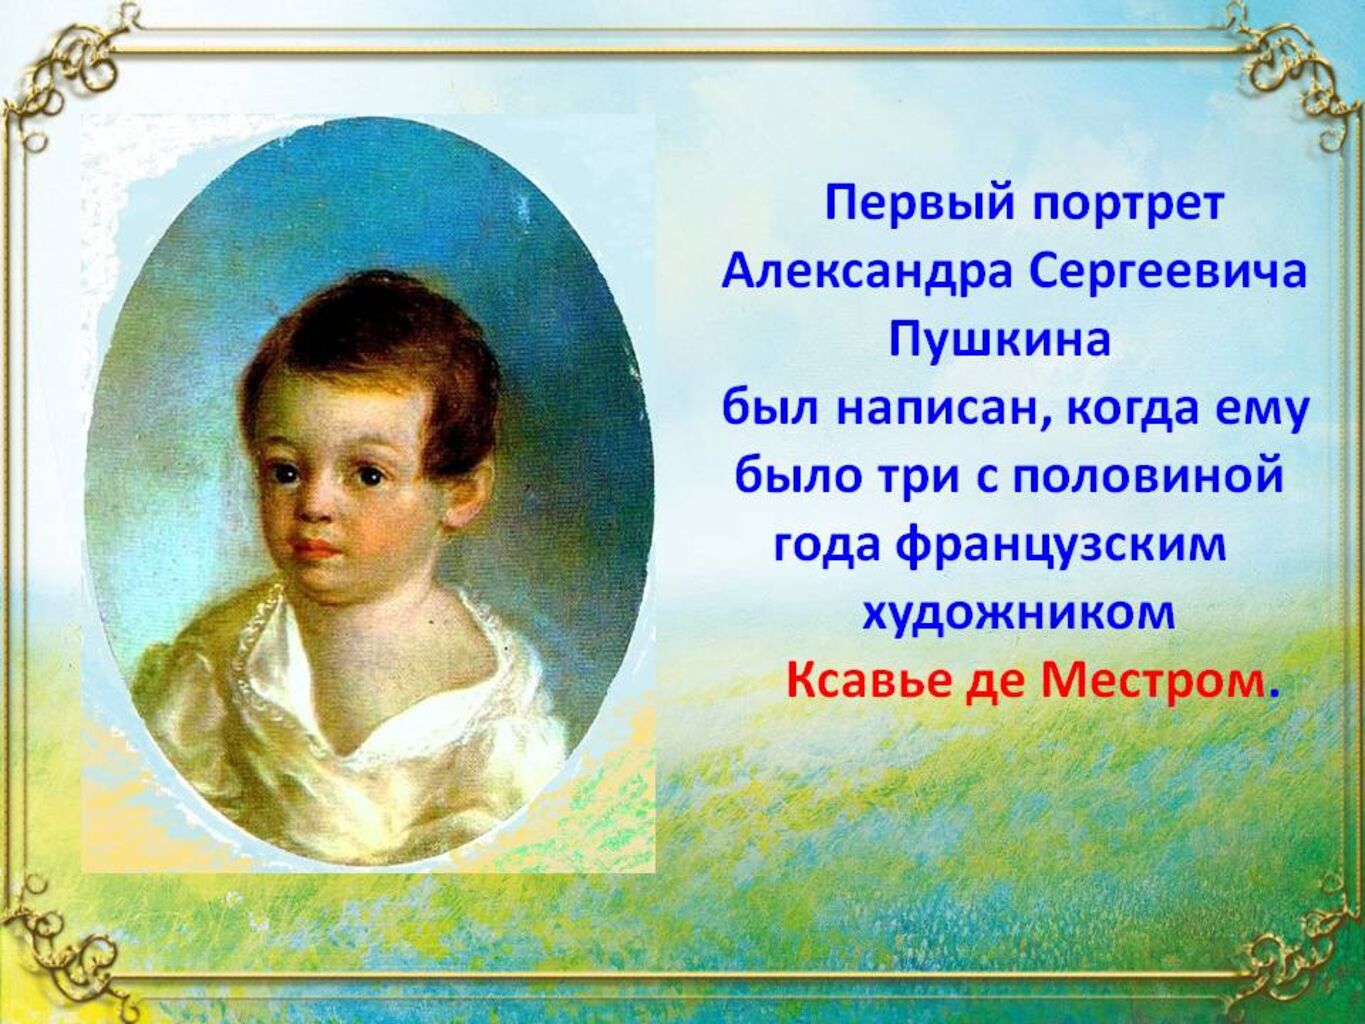 Александр Сергеевич Пушкин вся информация о его детстве